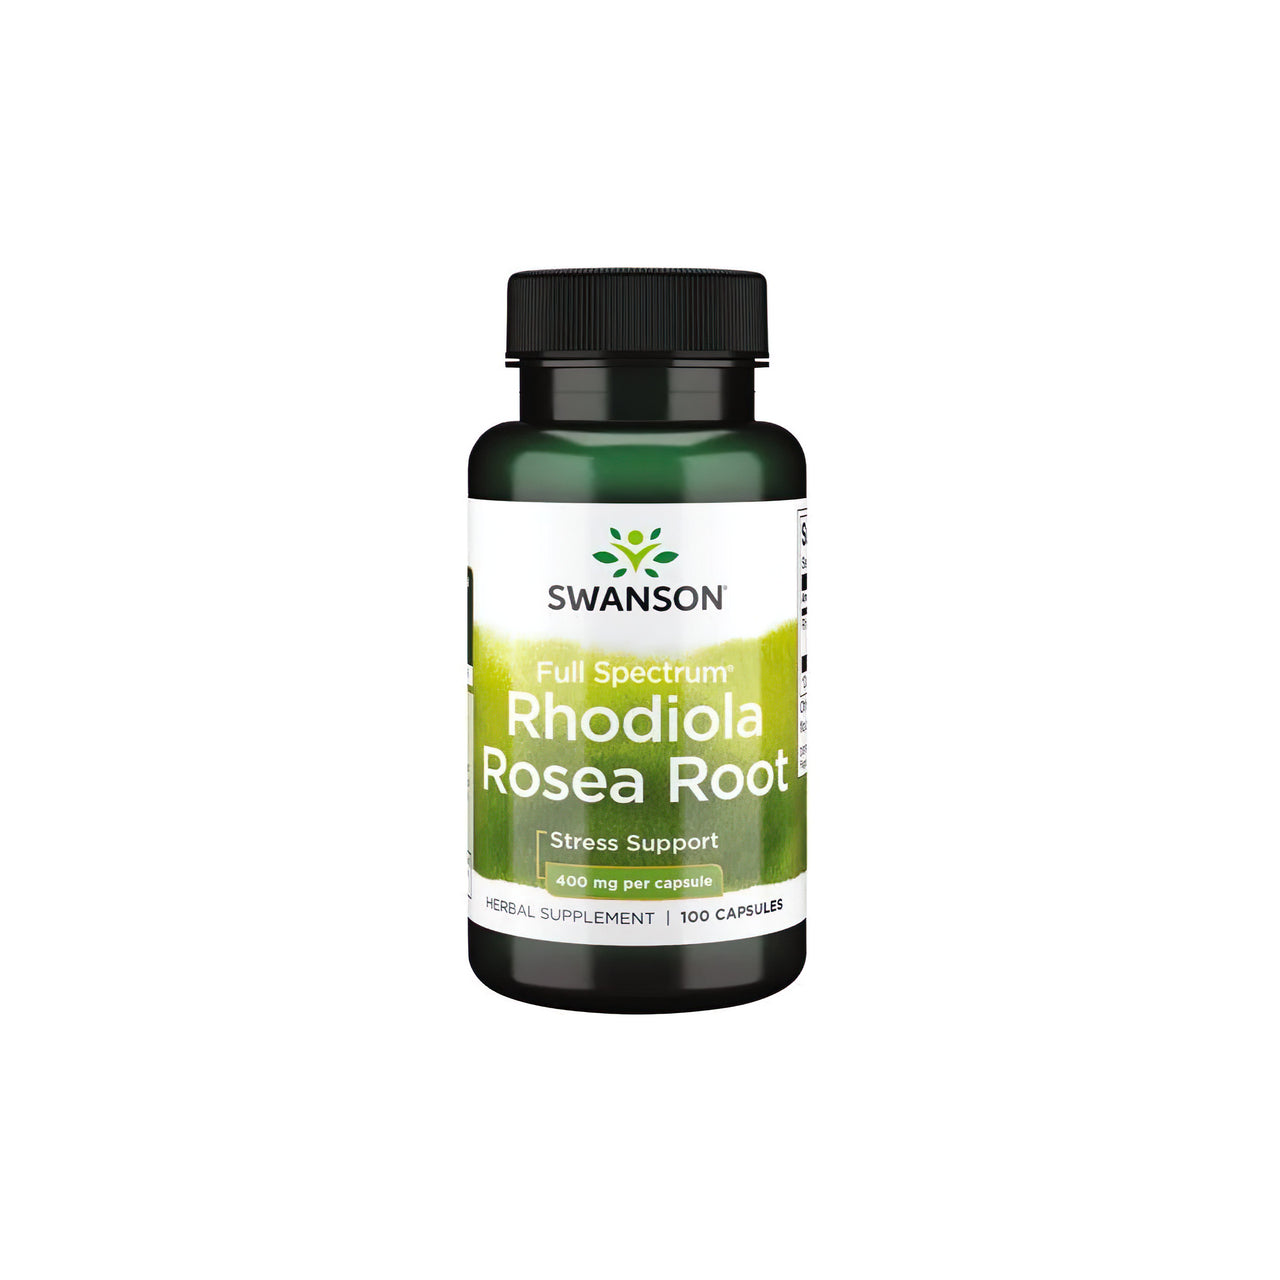 Swanson Rhodiola Rosea Root 400 mg 100 Kapseln, ein adaptogenes Kraut, das dafür bekannt ist, dass es Stress bekämpft.